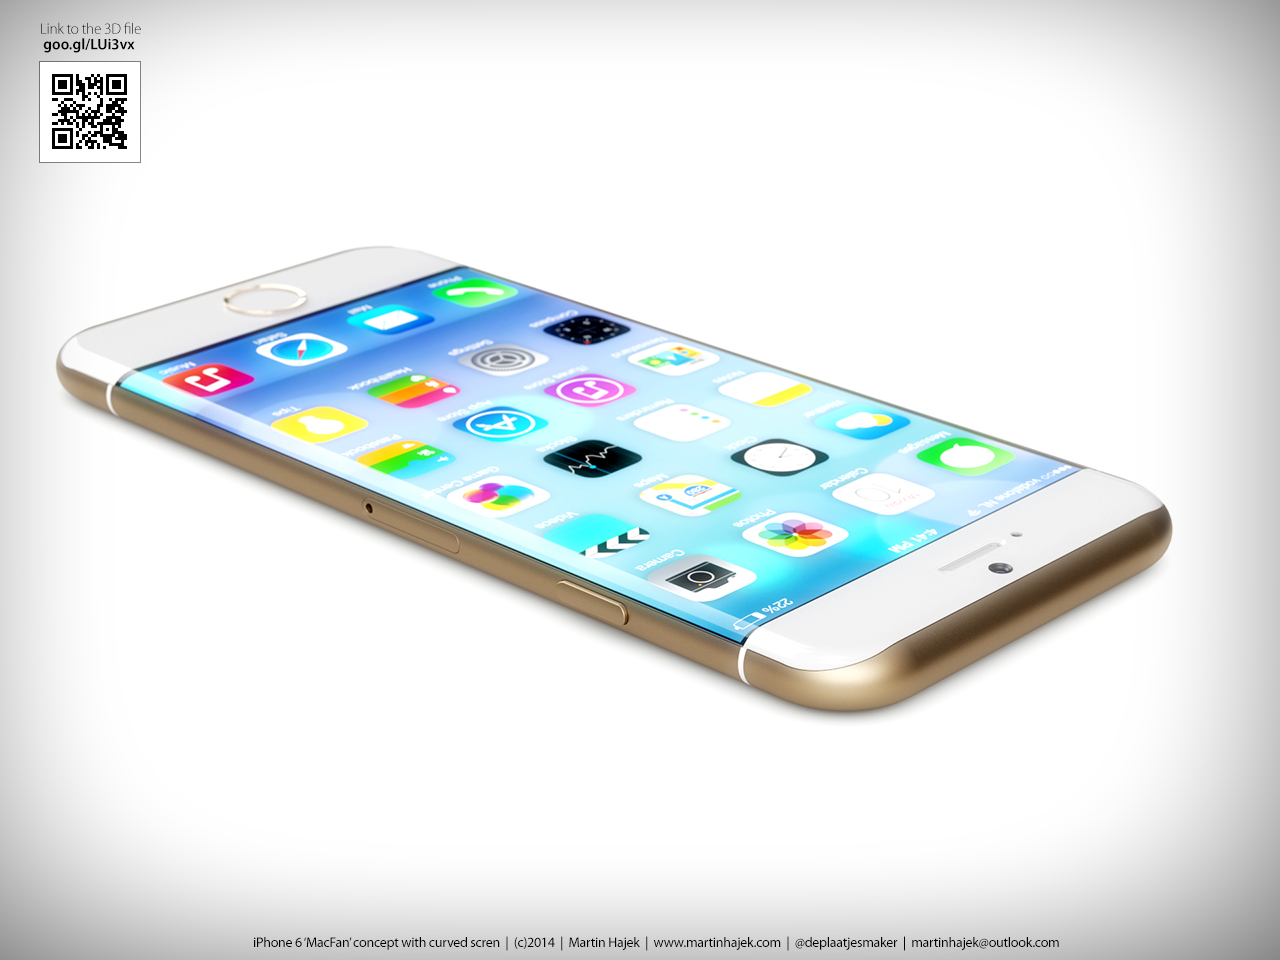 Conceito de iPhone 6 com tela curva